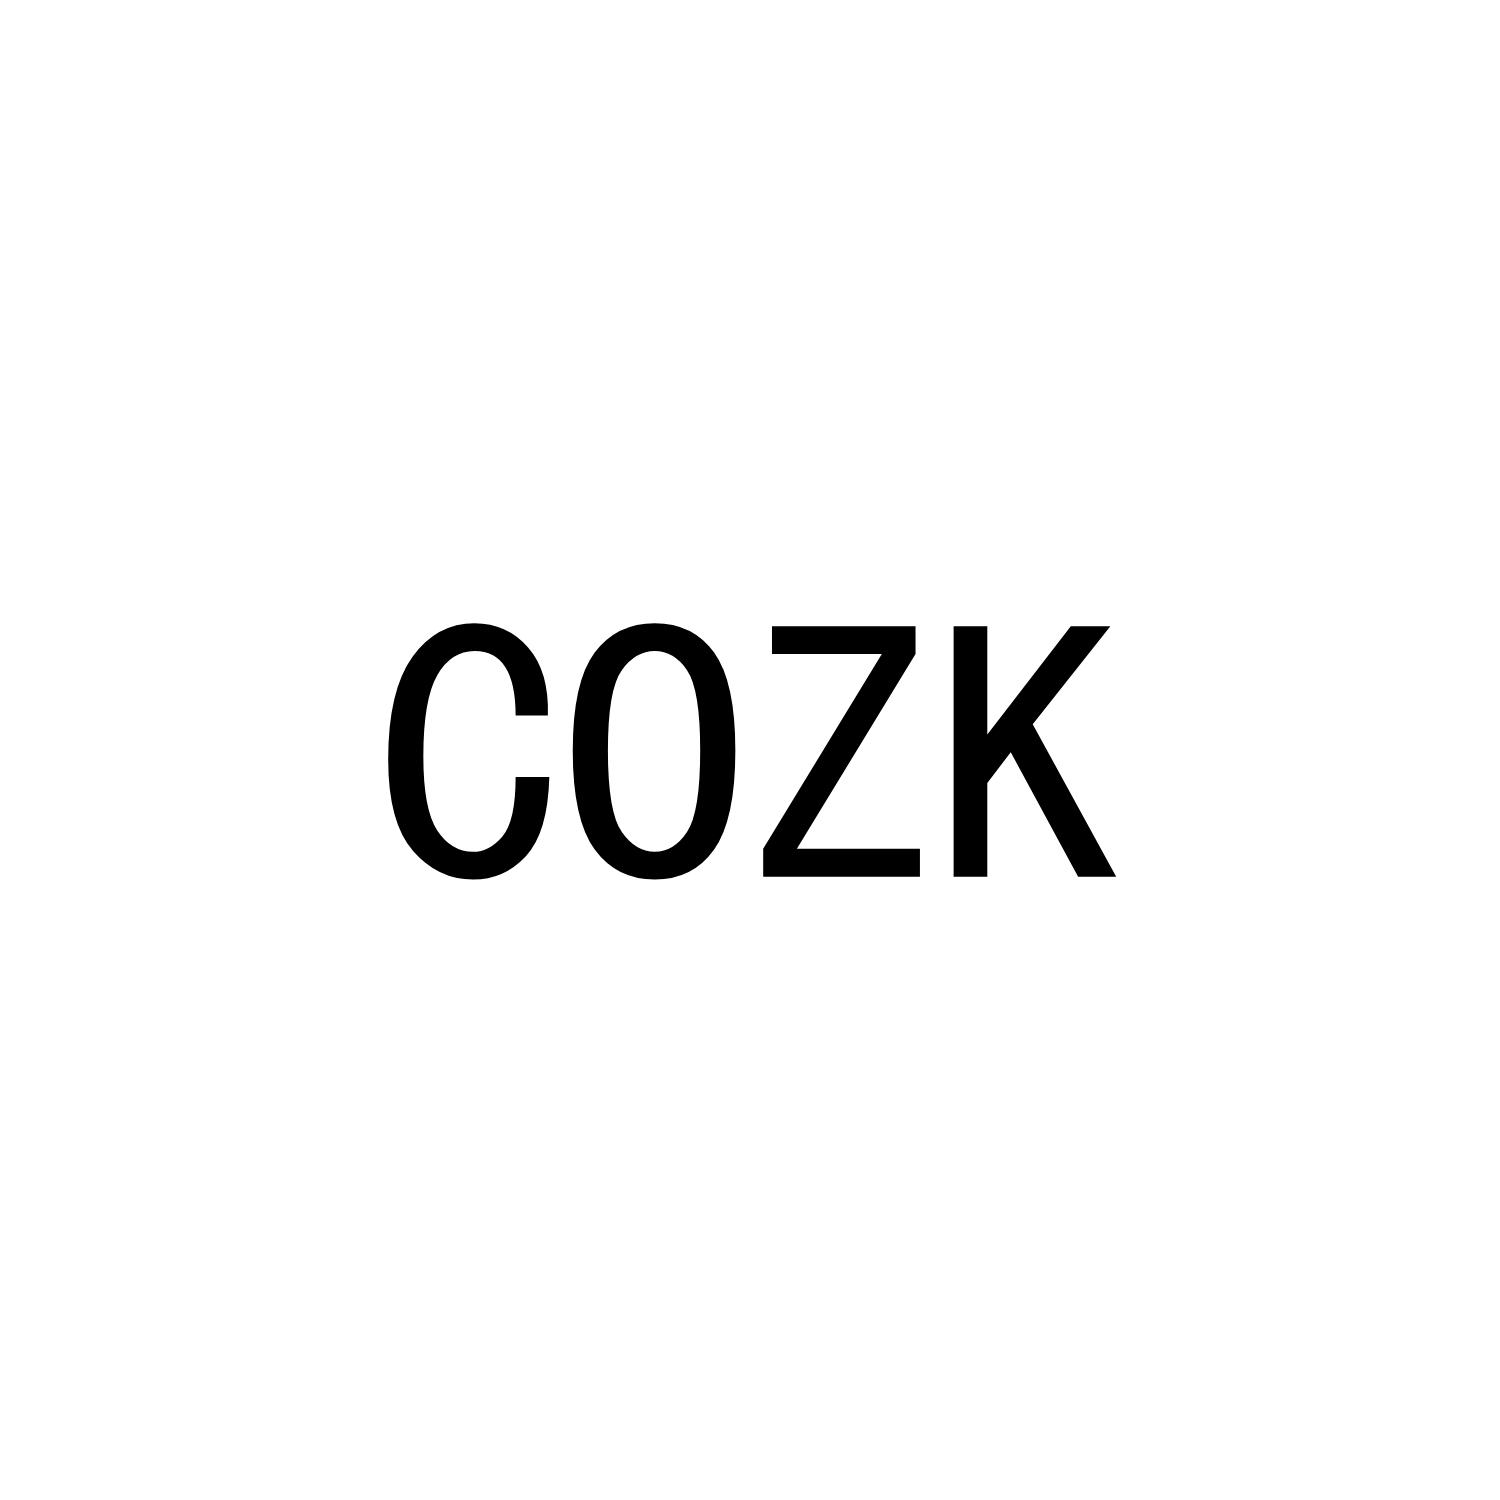 COZK